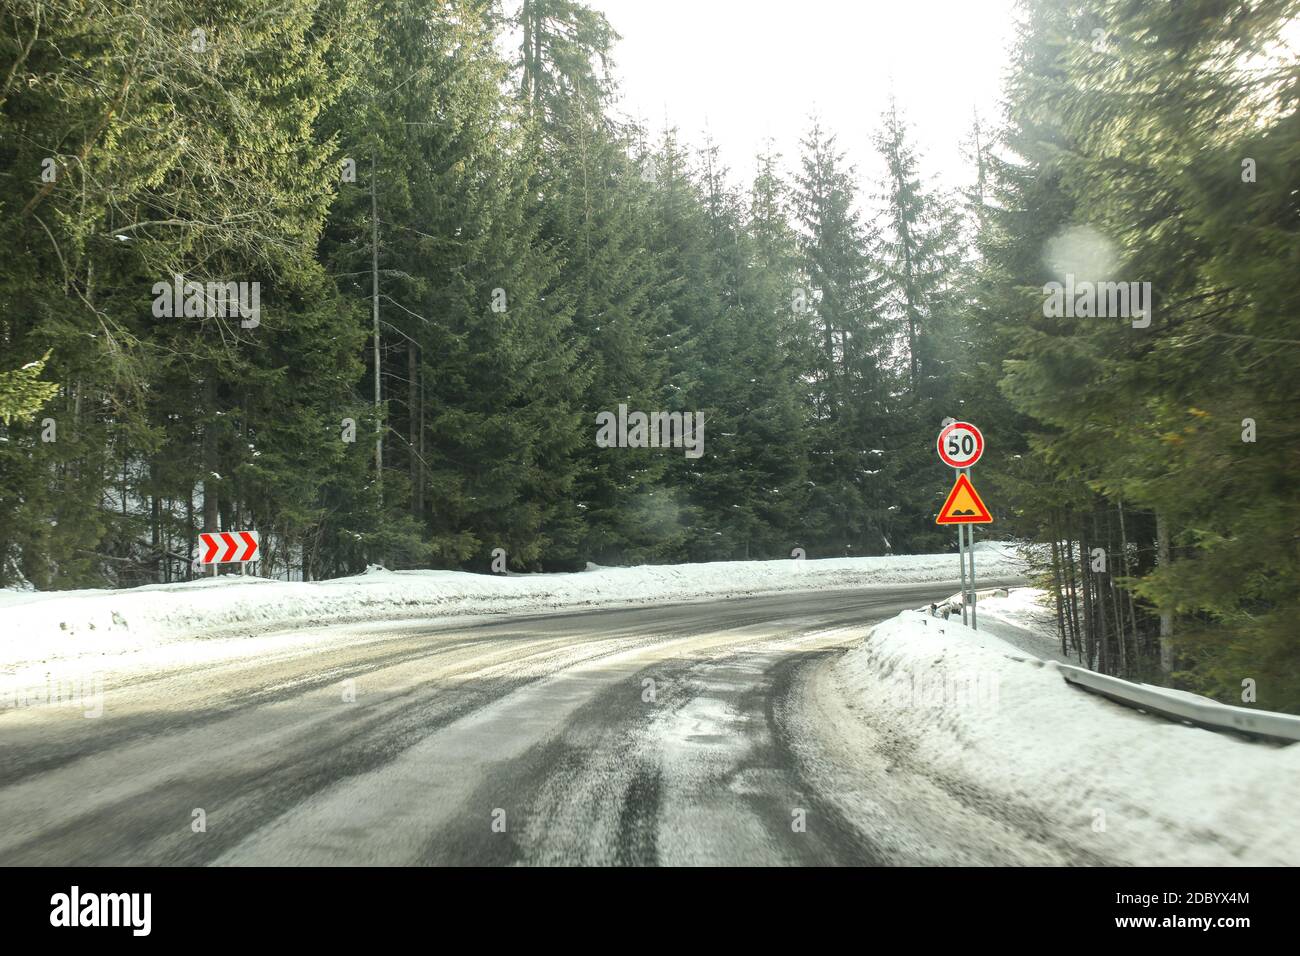 Treiber Blick auf scharfe Kurve der Straße, teilweise mit Schnee im Nadelwald bedeckt, mit starken blendendem Sonnenlicht. Tempo 50 und Stößen zu Il Stockfoto